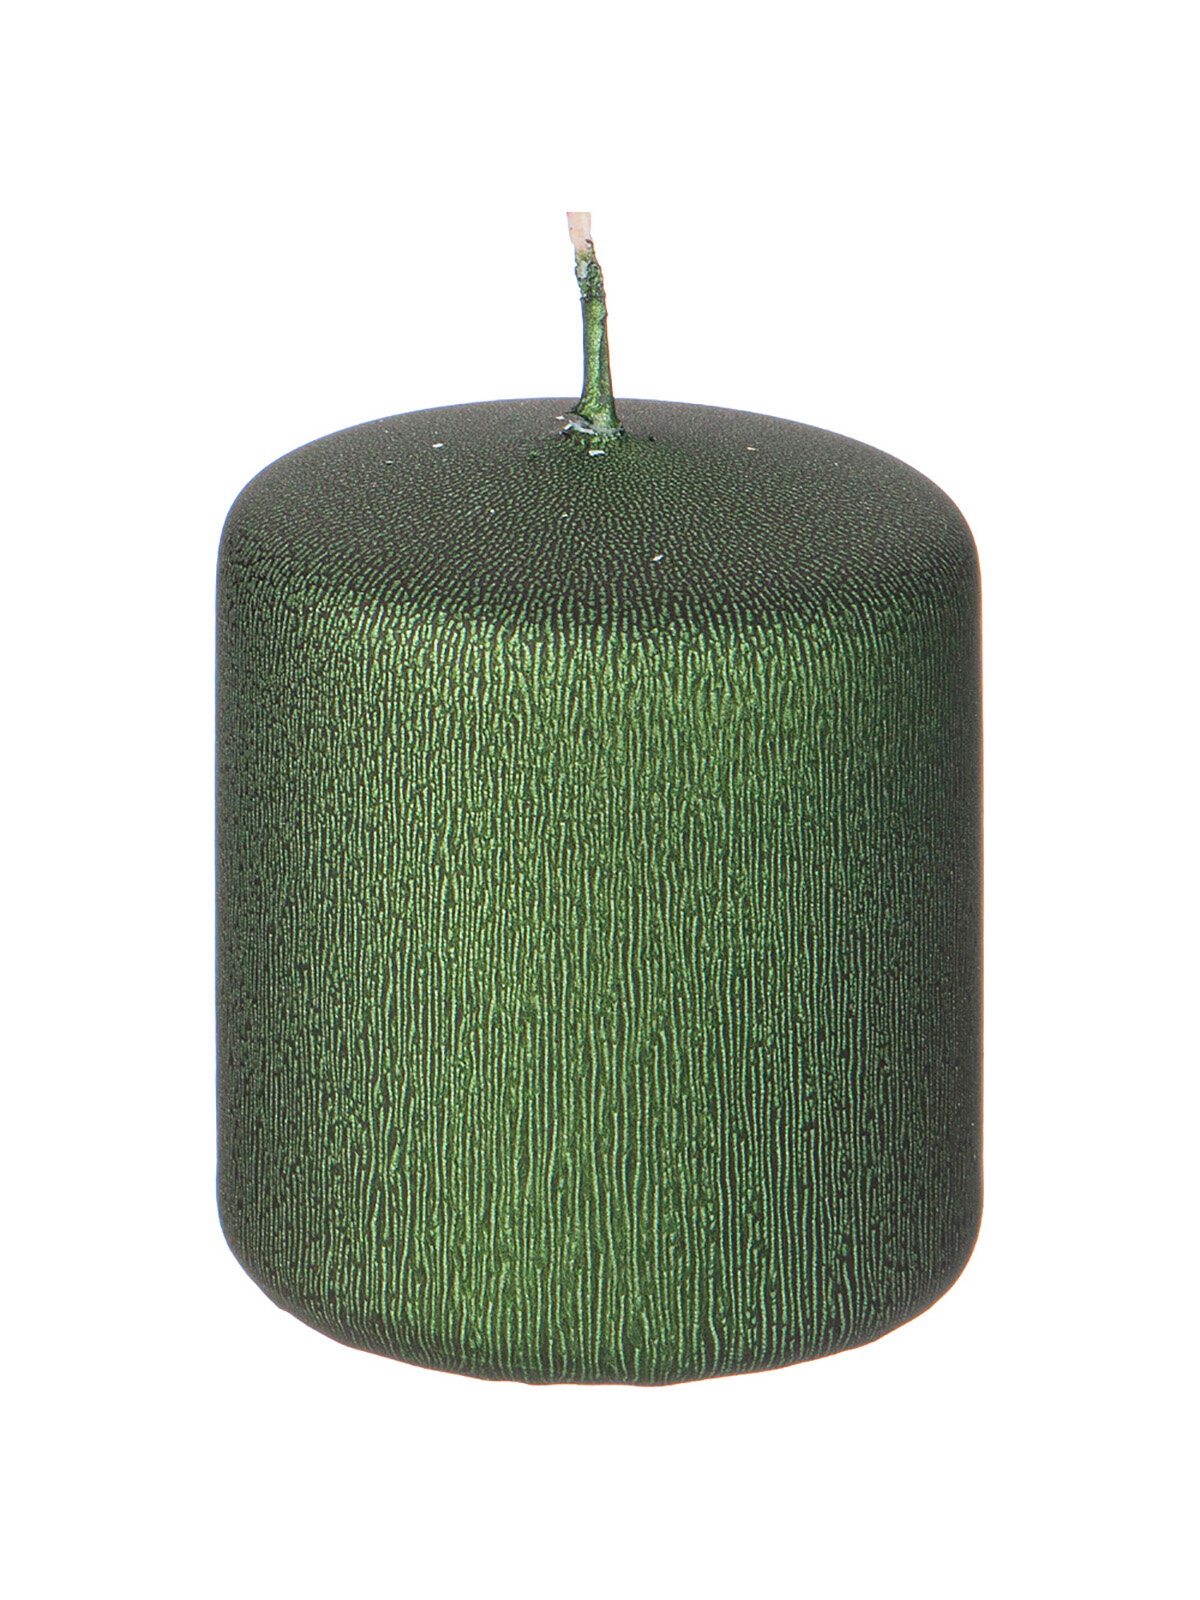 Свеча Новый Год Adpal, столбик зеленый, 7 см